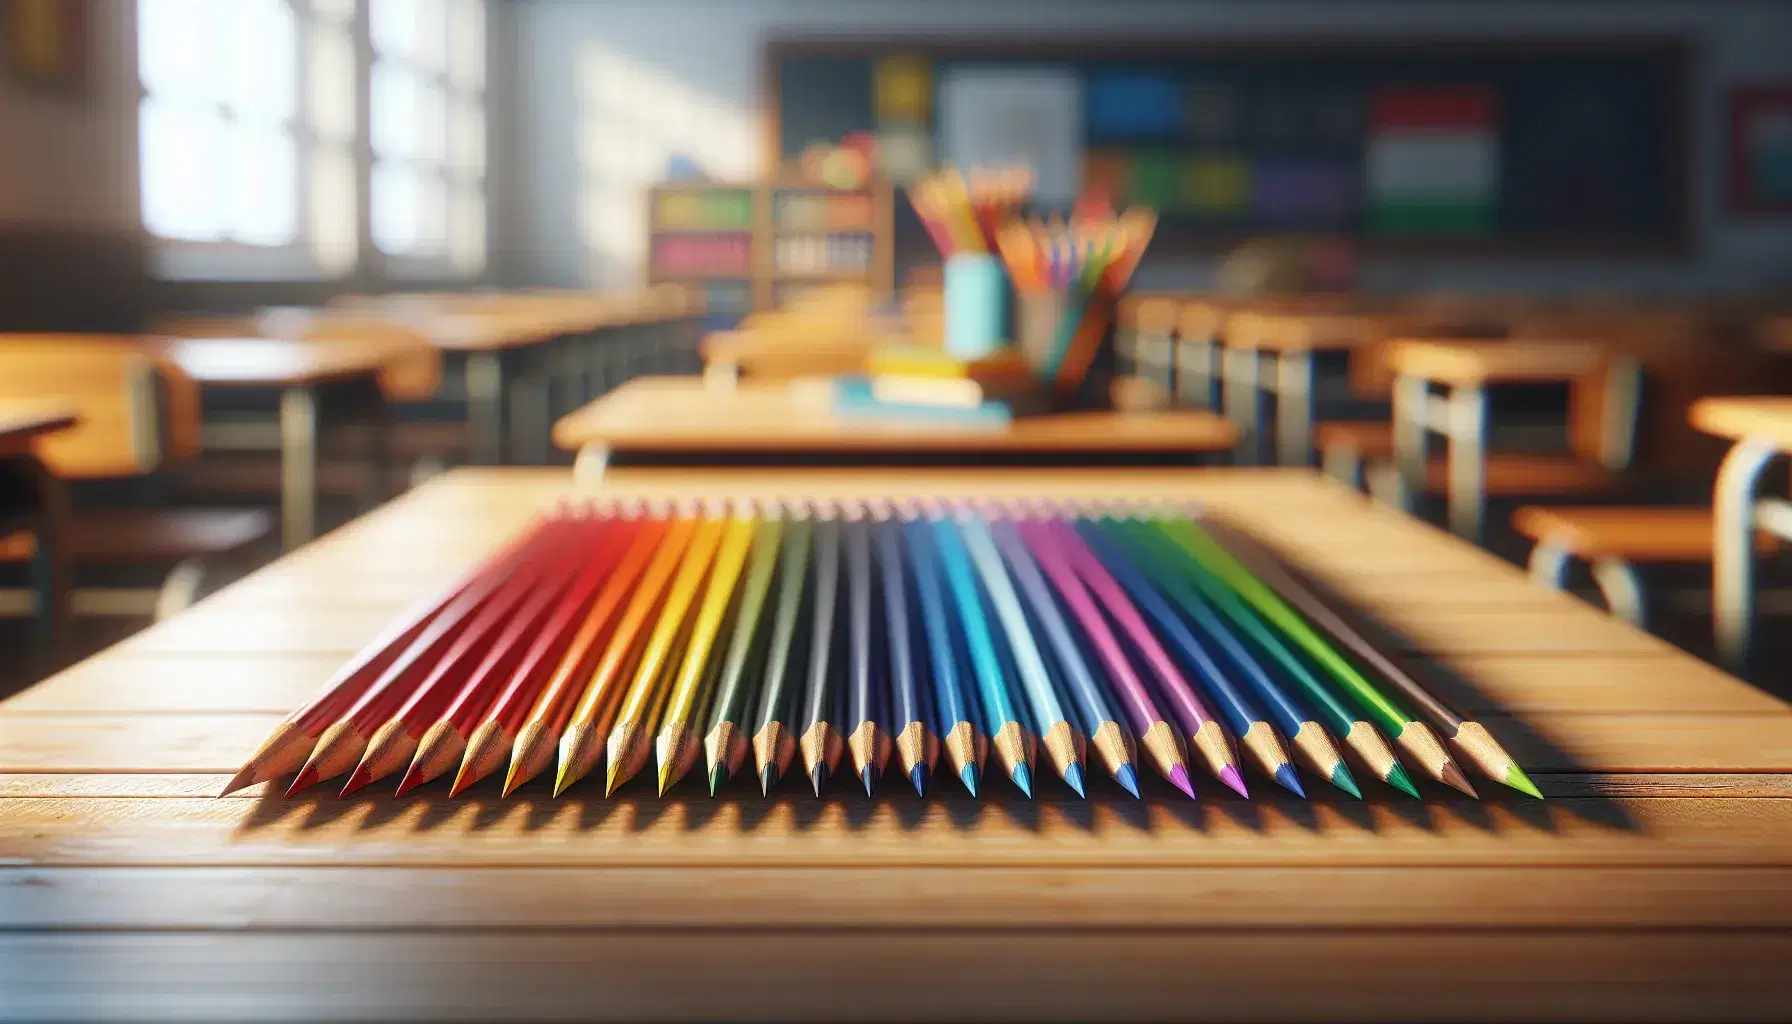 Matite colorate allineate su tavolo di legno in sfumature arcobaleno con sfondo sfocato di aula scolastica, illuminazione naturale.